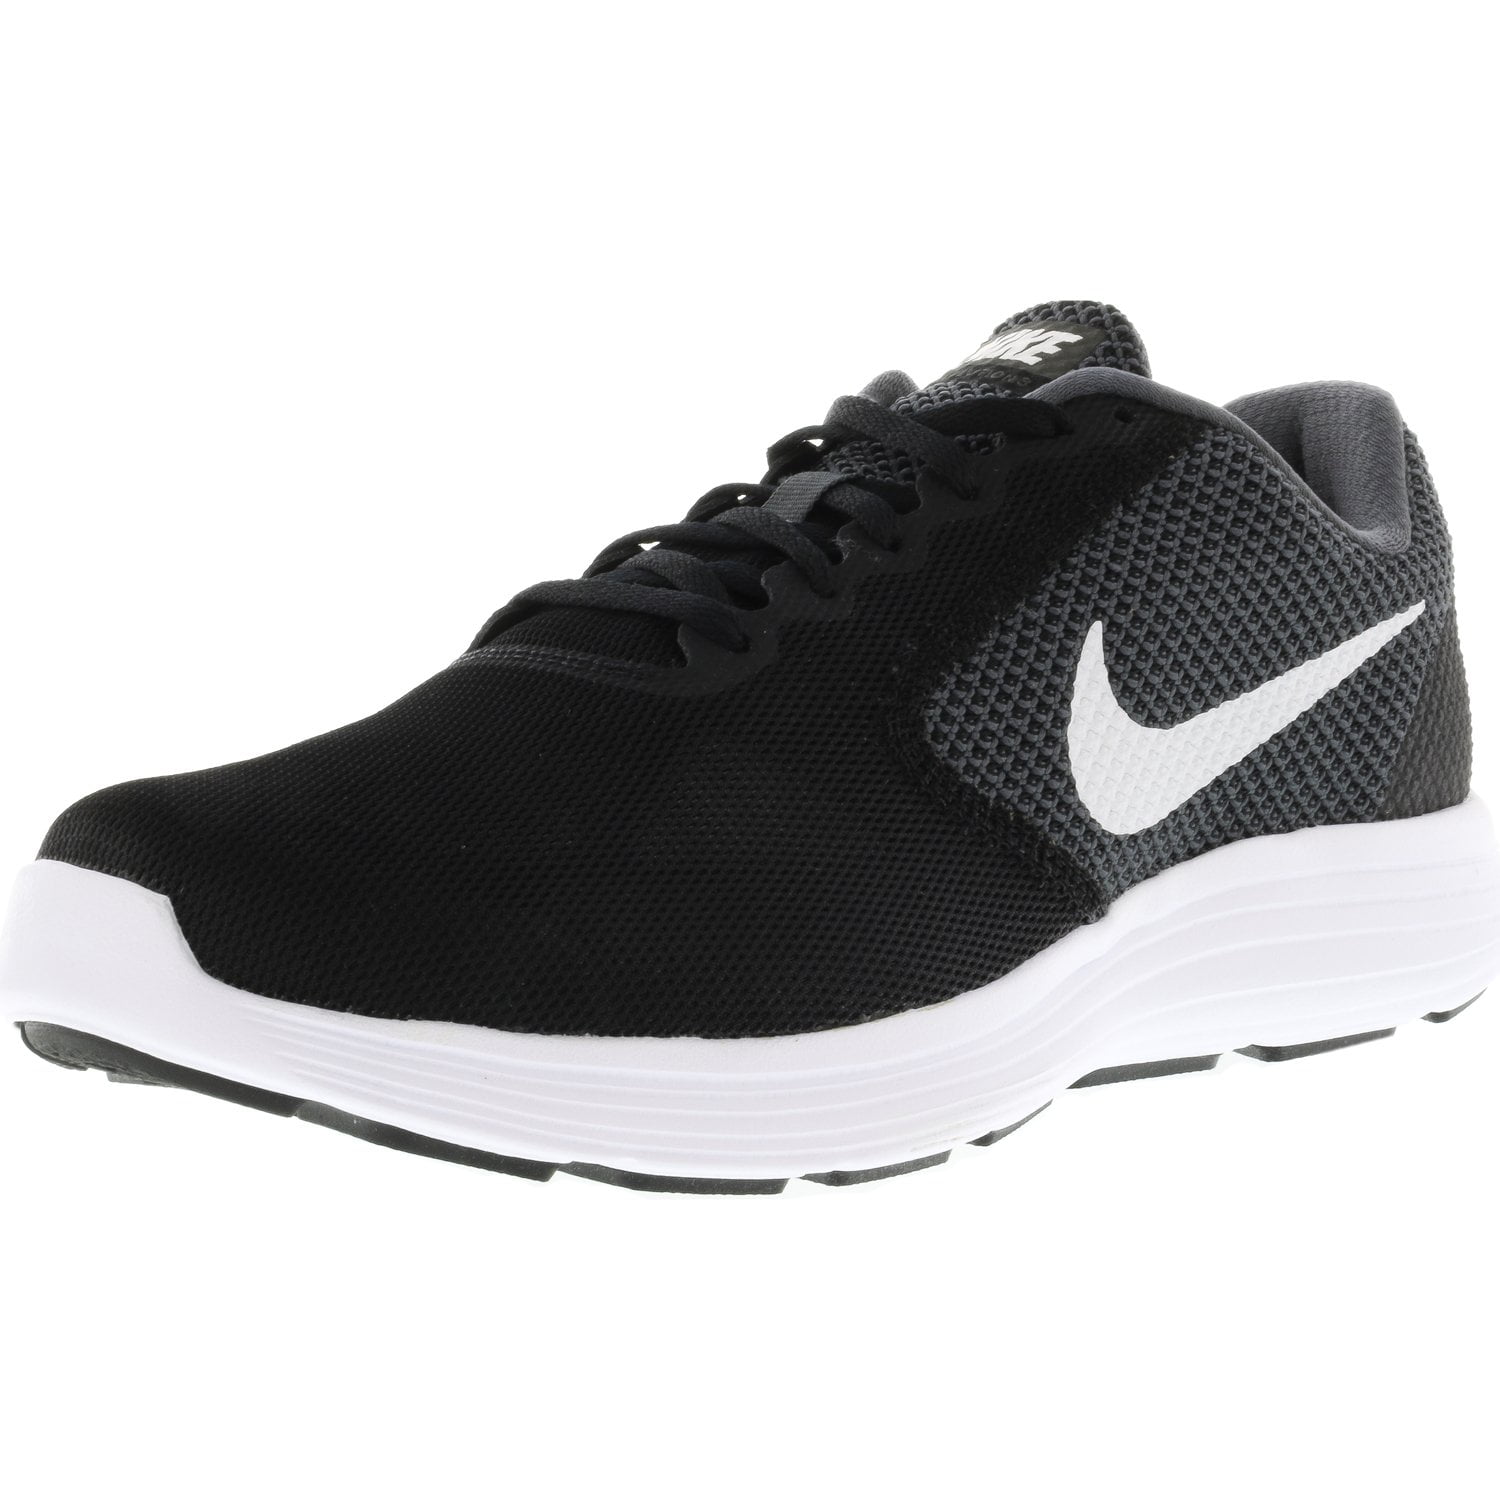 White-Black Ankle-High Running Shoe 